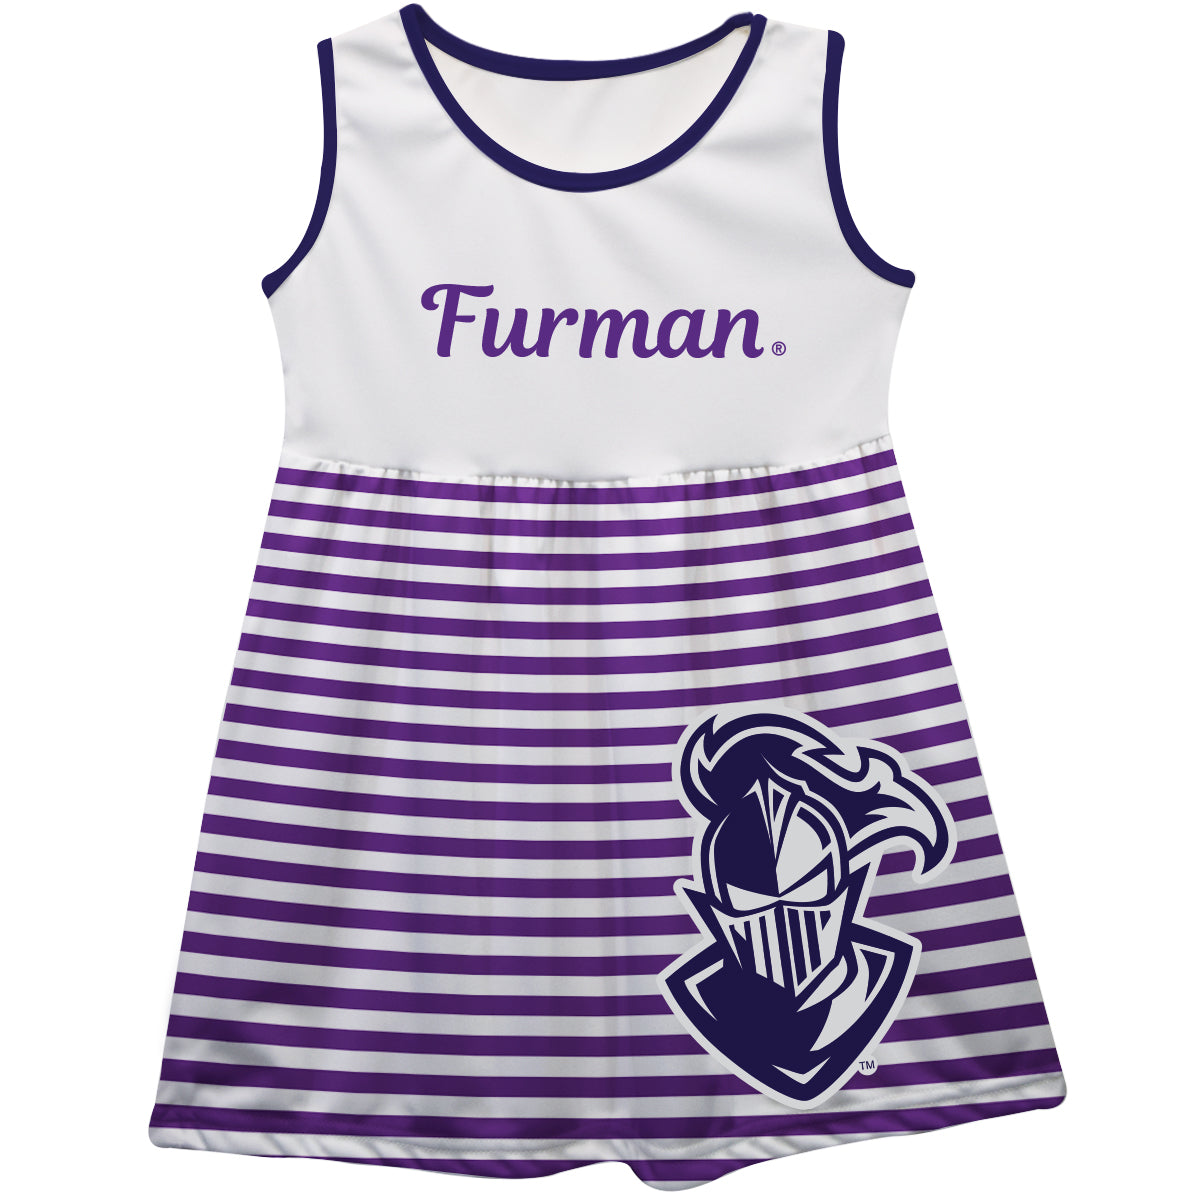 Furman Paladins Big Logo Purple And White Stripes Tank Dress by Vive La Fete-Campus-Wardrobe